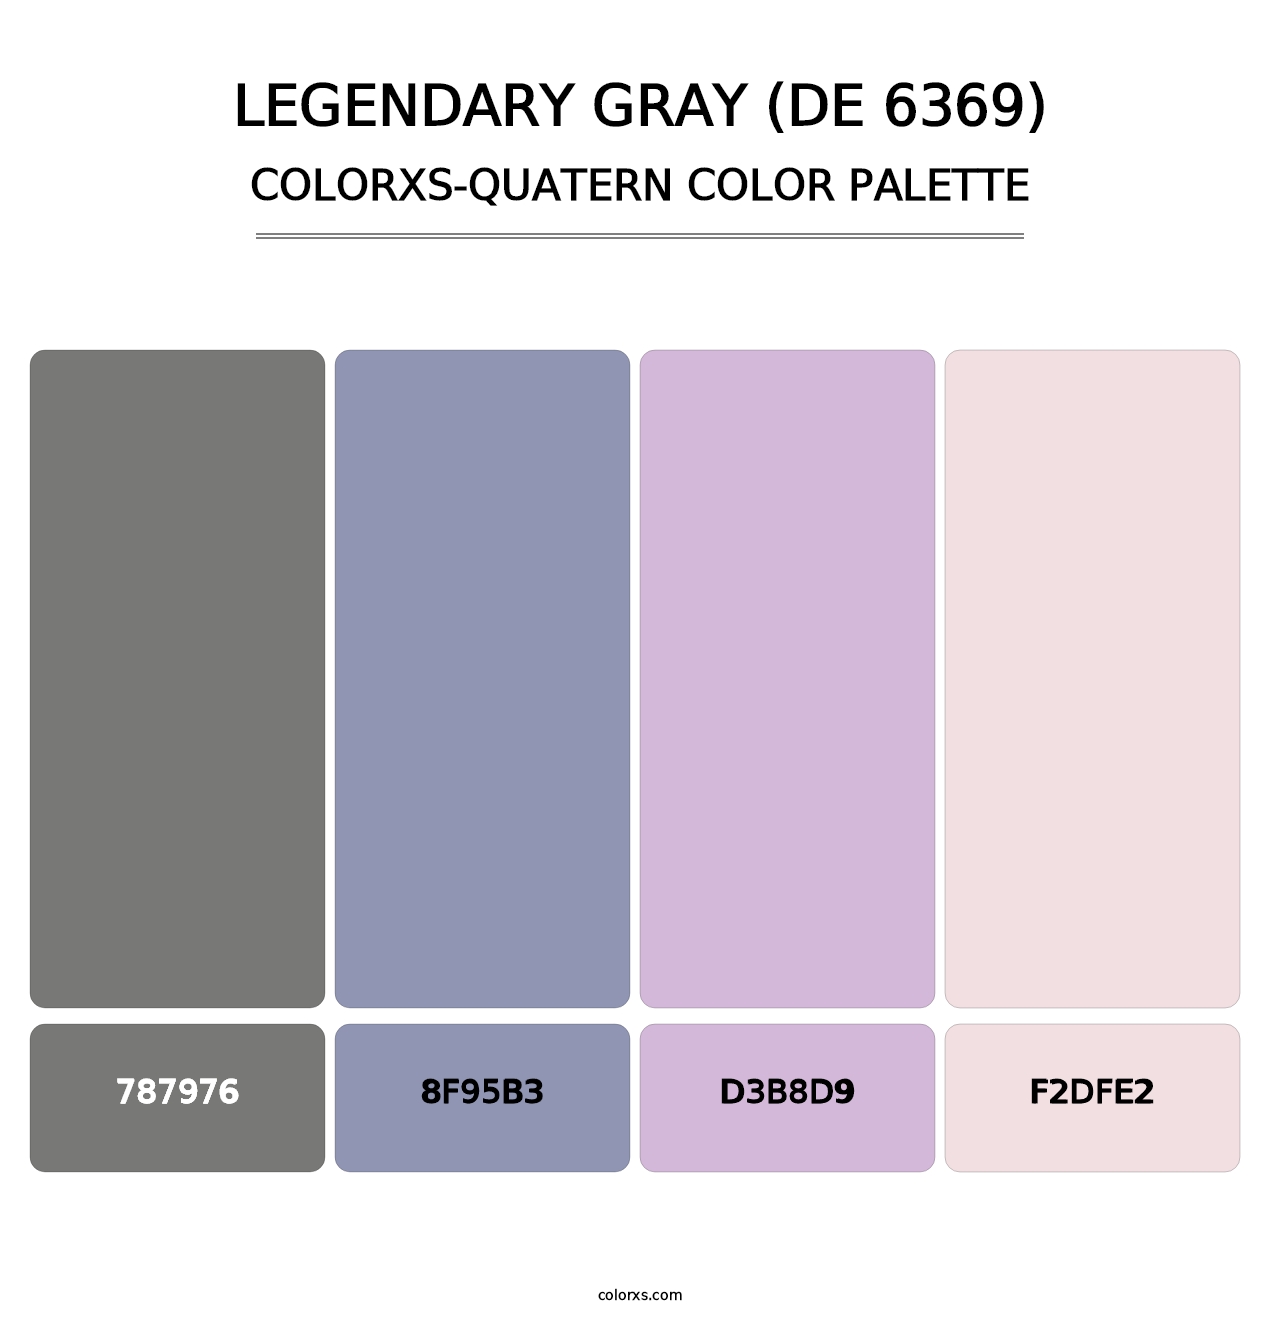 Legendary Gray (DE 6369) - Colorxs Quatern Palette